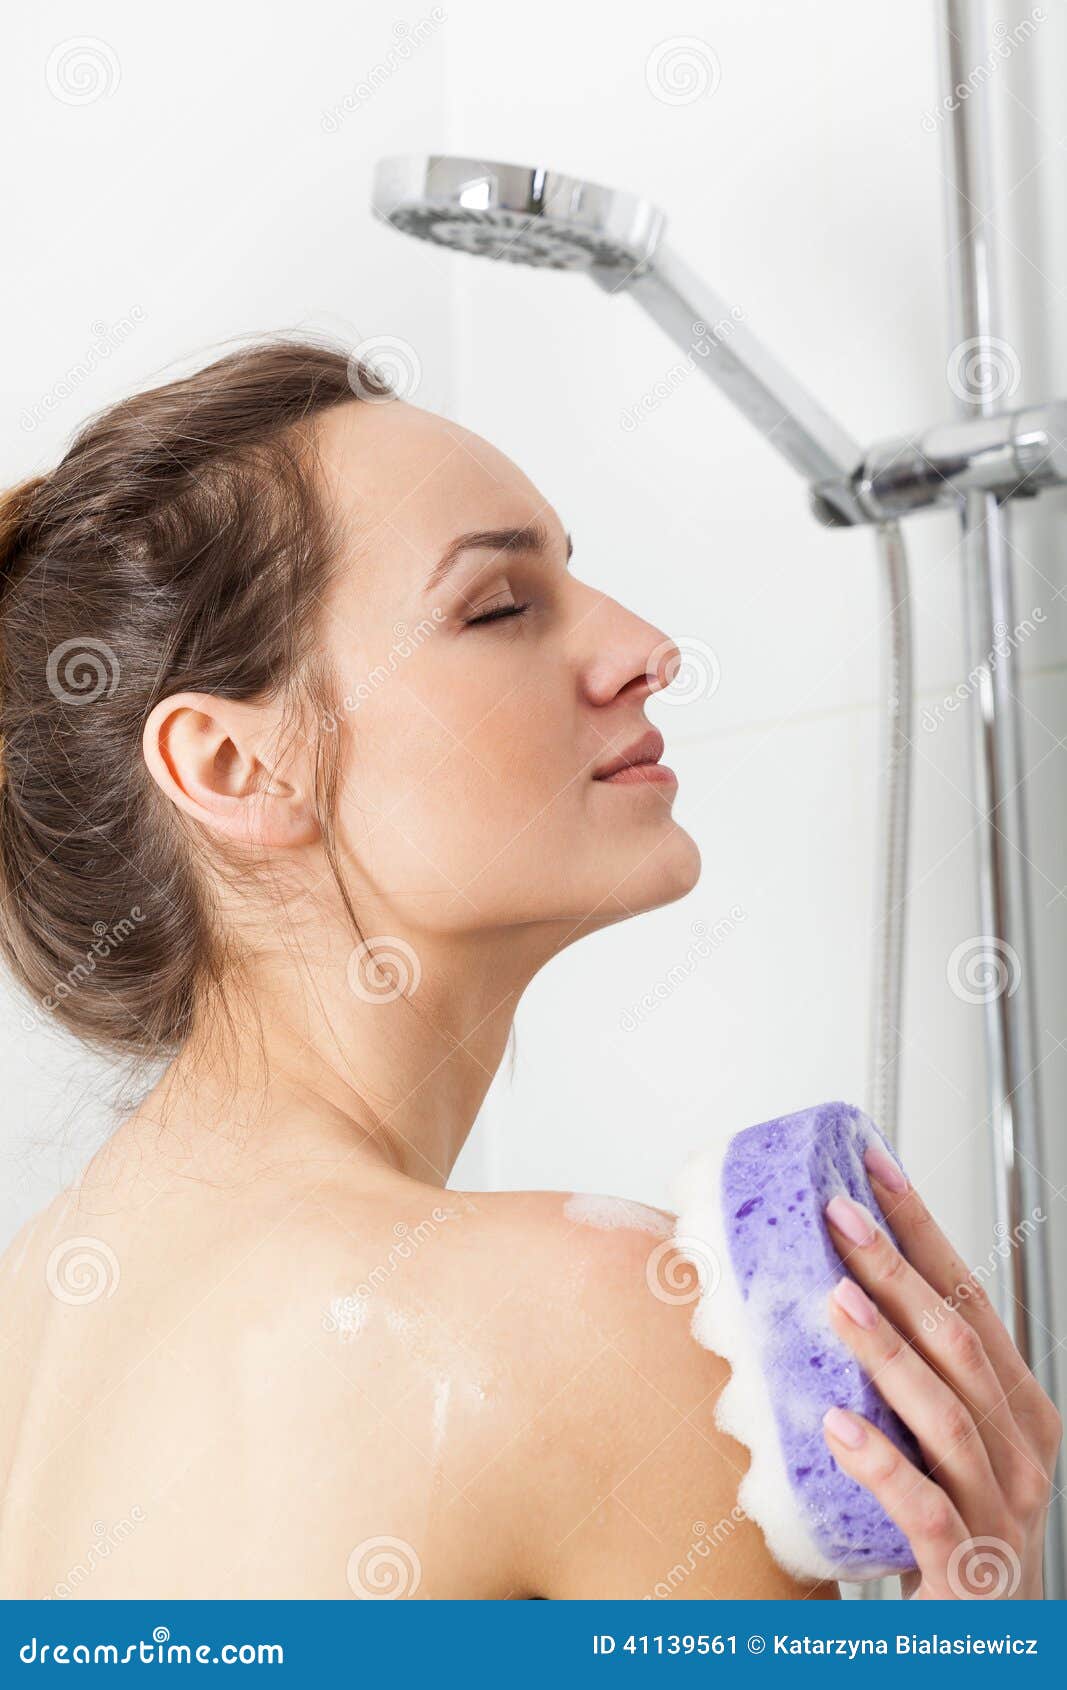 shower voyeur Girl